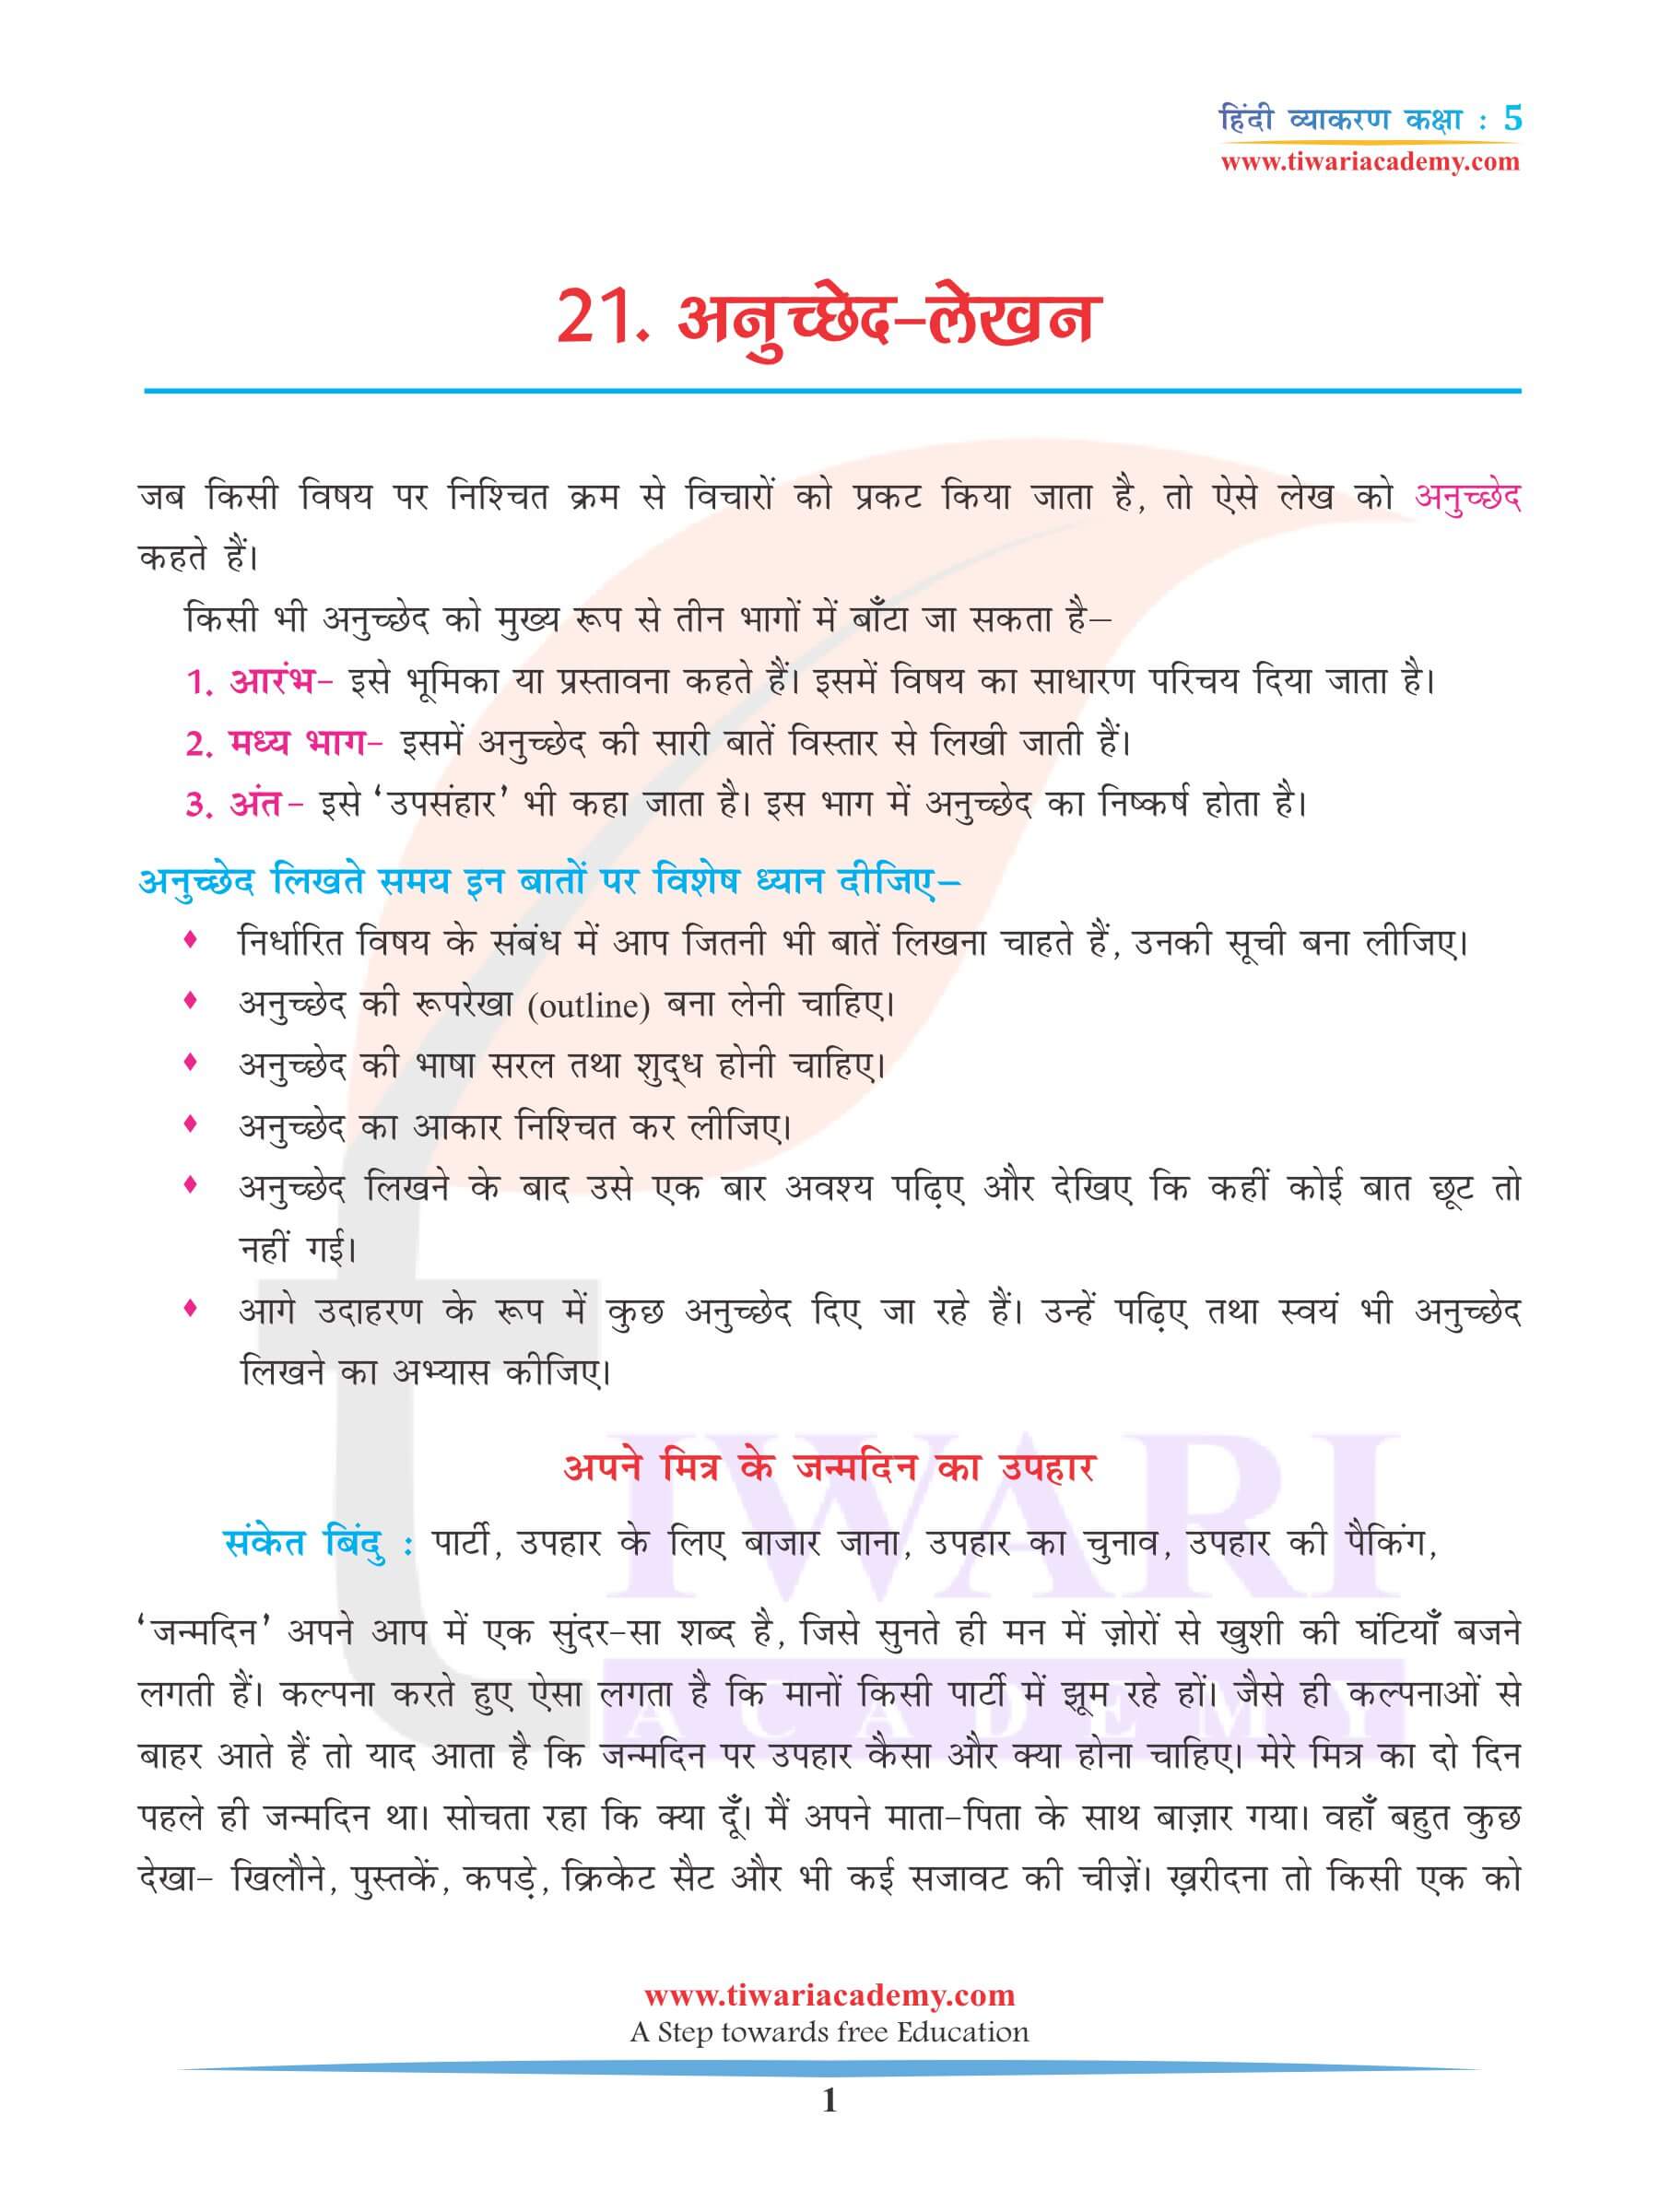 कक्षा 5 हिंदी व्याकरण अनुच्छेद लेखन